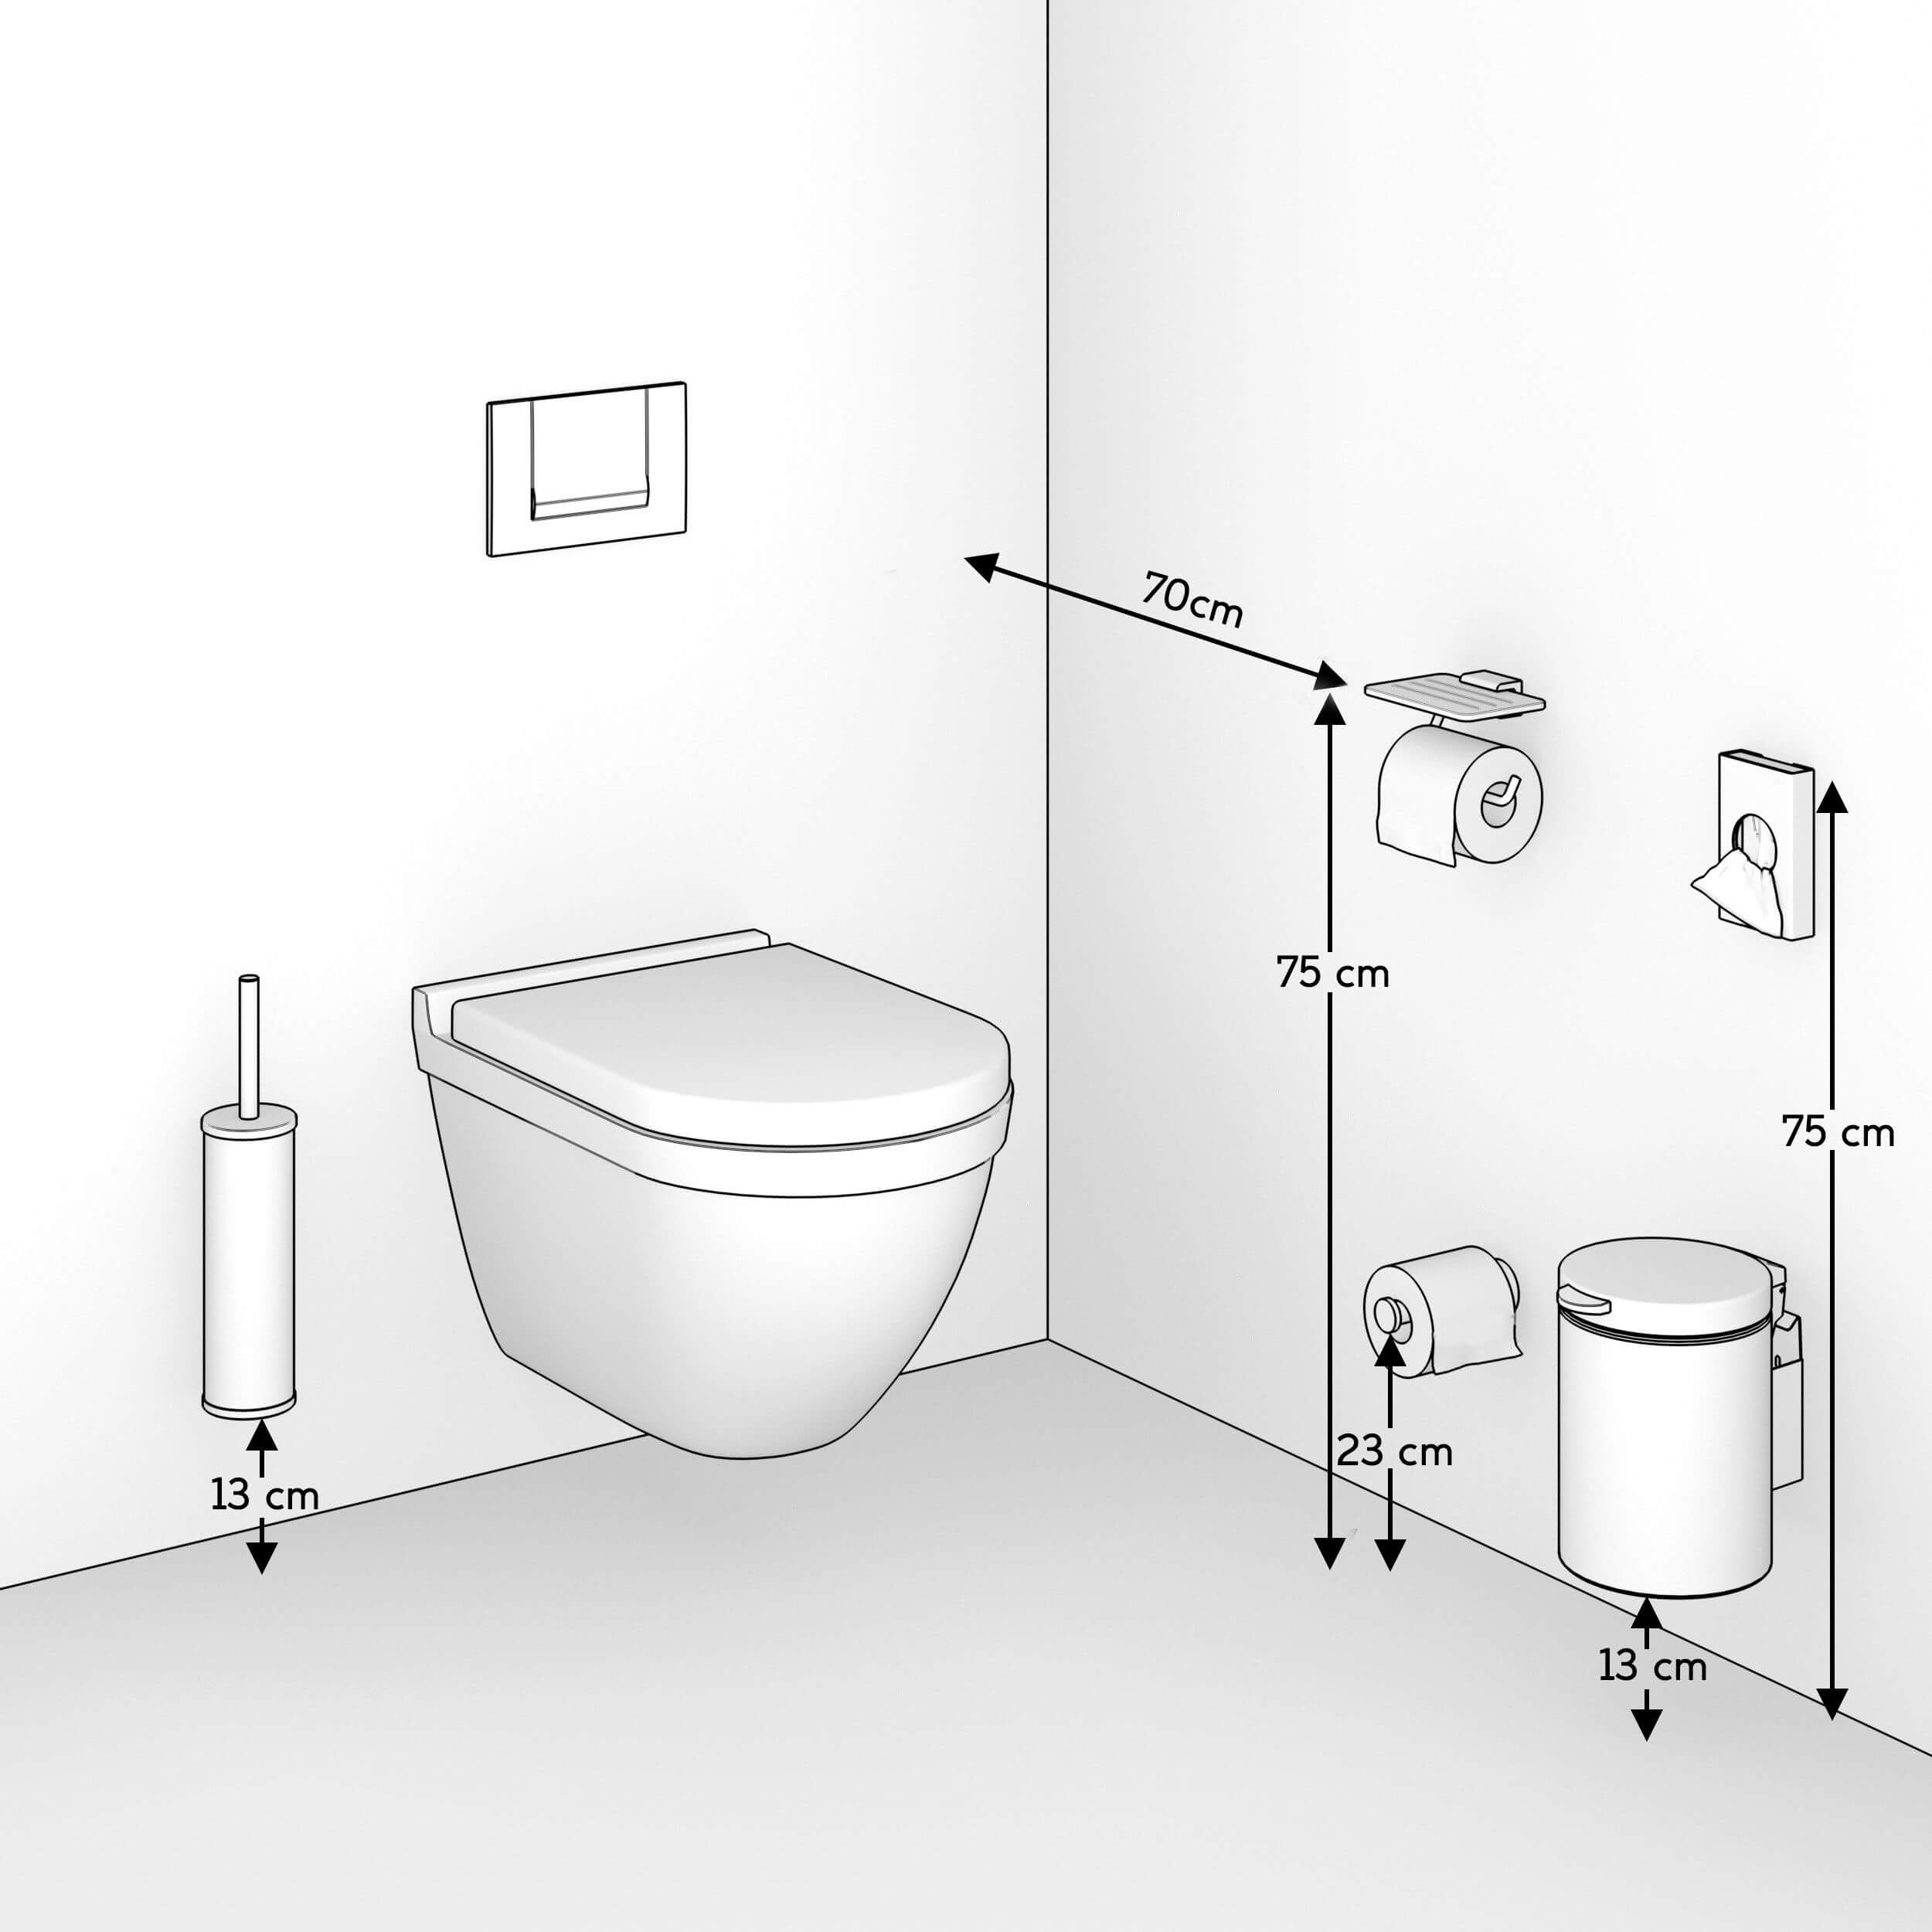 استانداردهای حمام سرویس بهداشتی19